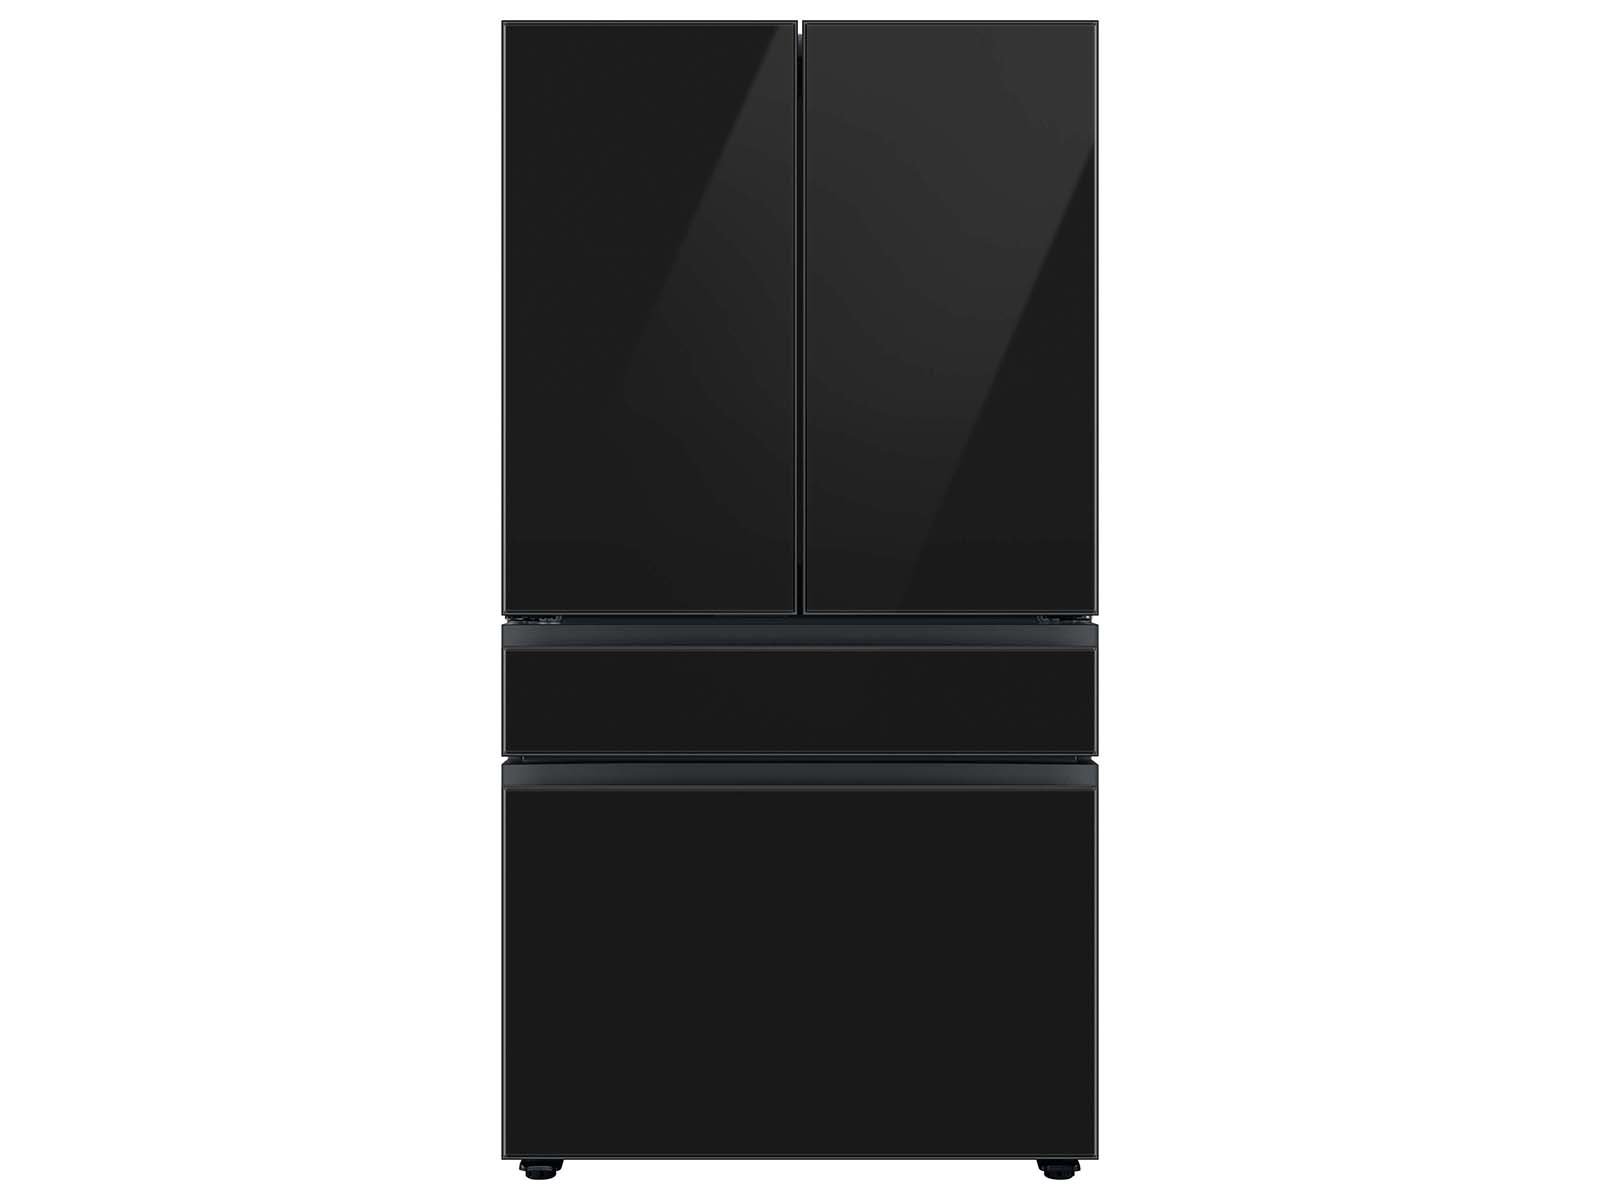 Thumbnail image of Bespoke 4-Door French Door Refrigerator Panel in Charcoal Glass - Top Panel